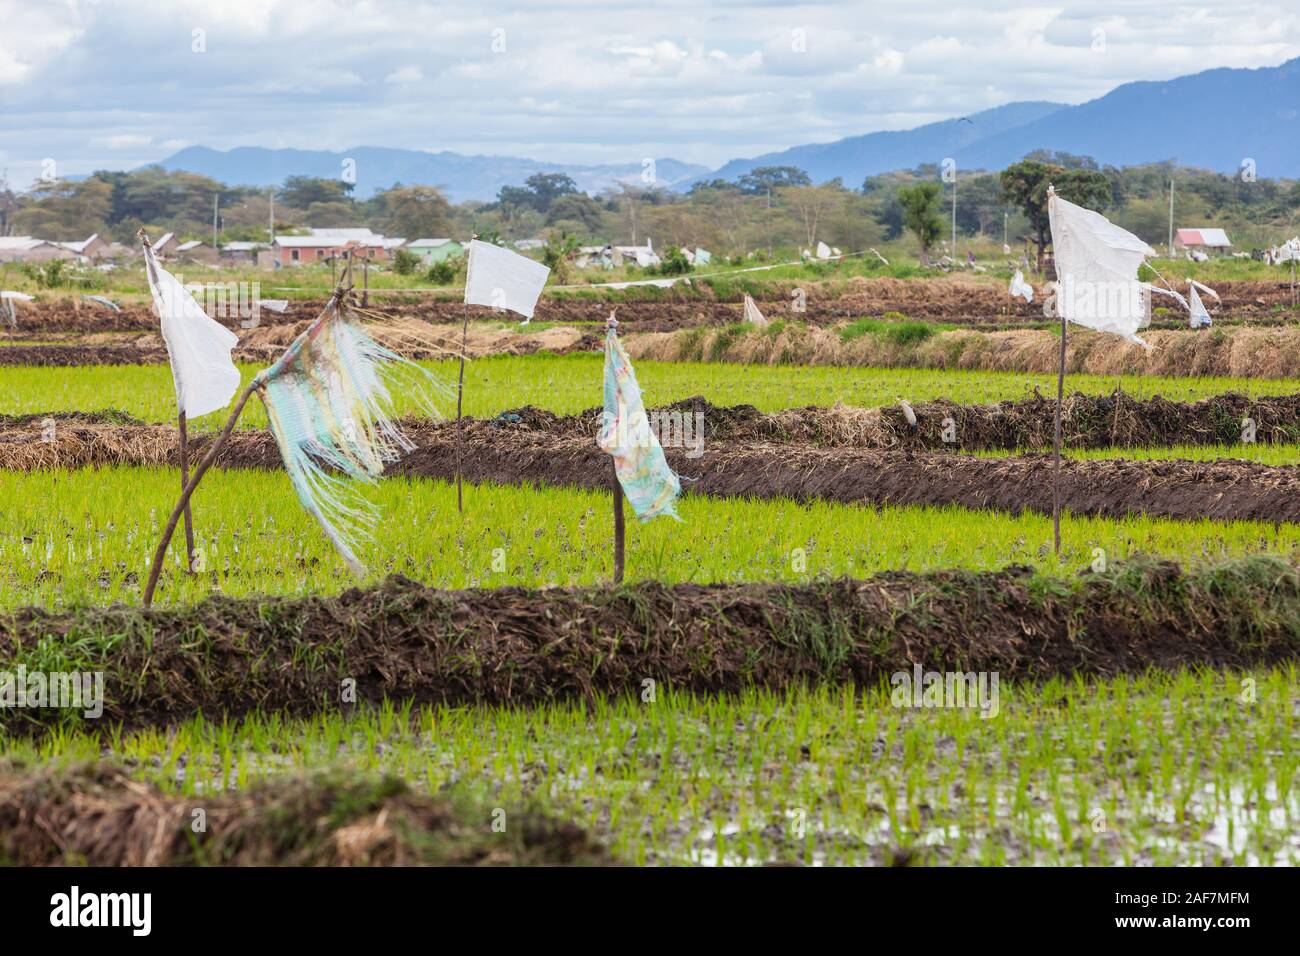 Tanzania, Mto wa Mbu.  Rice Paddies. Stock Photo